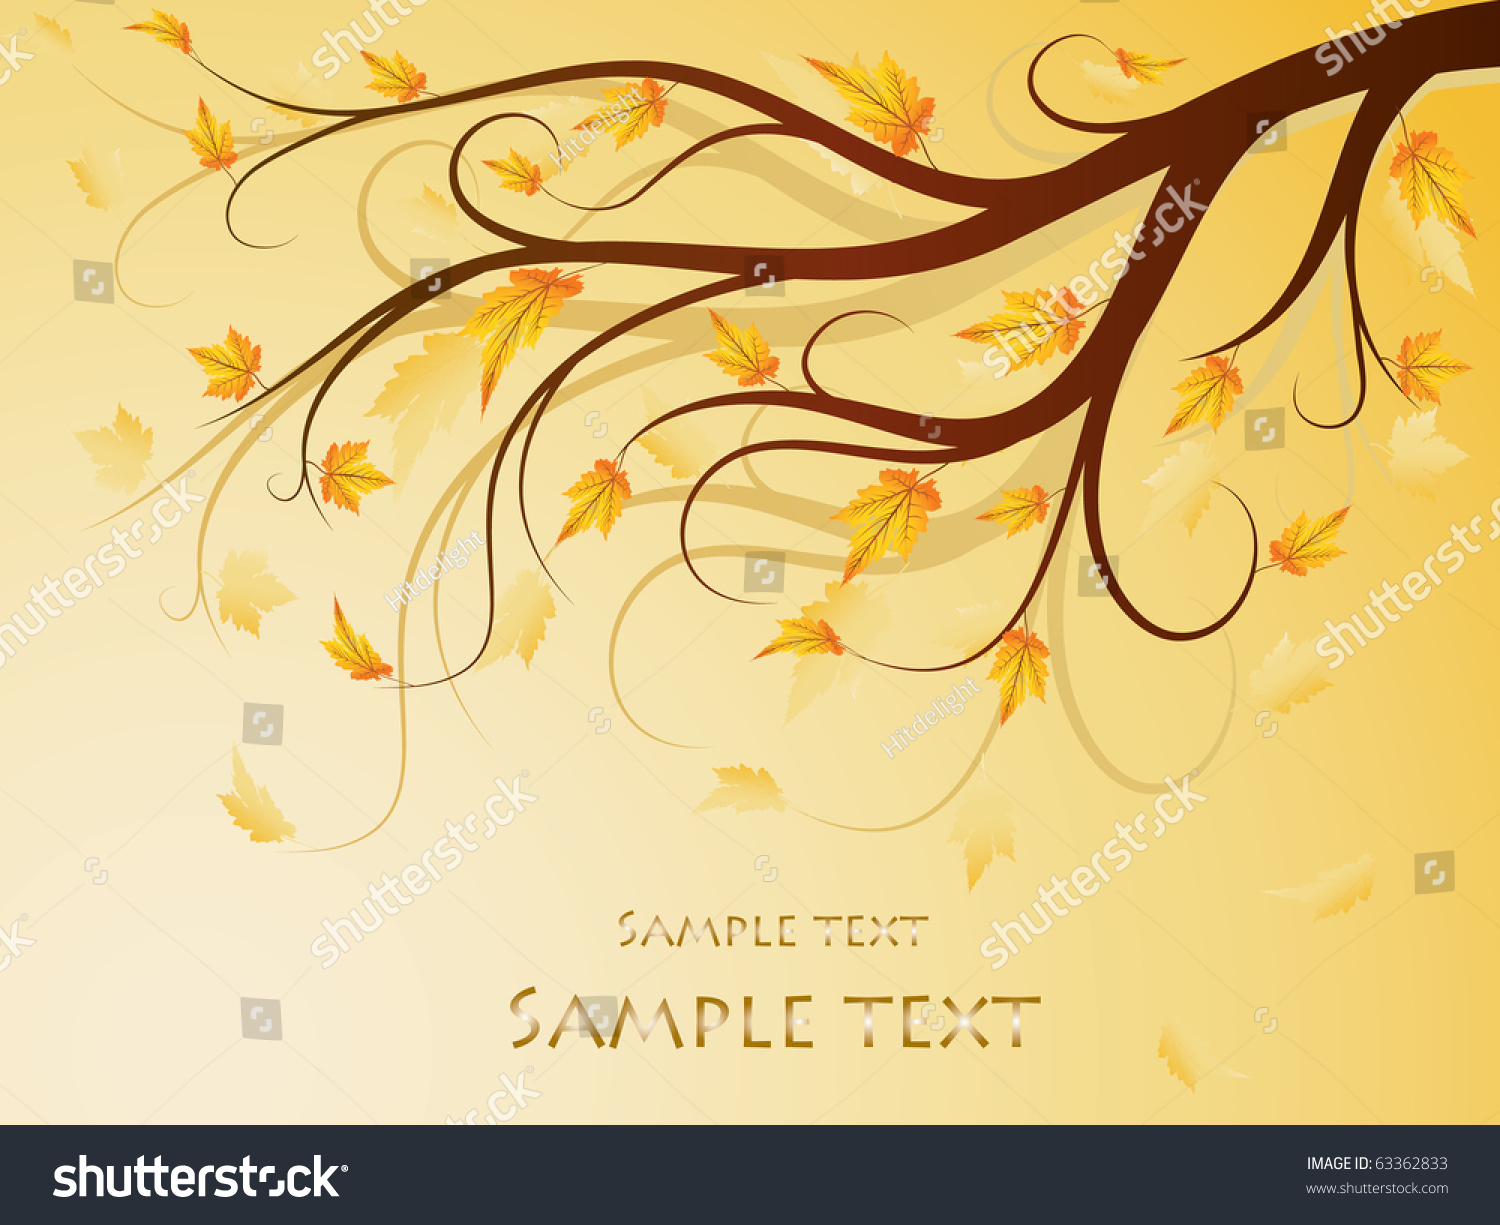 Autumn Tree Stock Vector 63362833 : Shutterstock